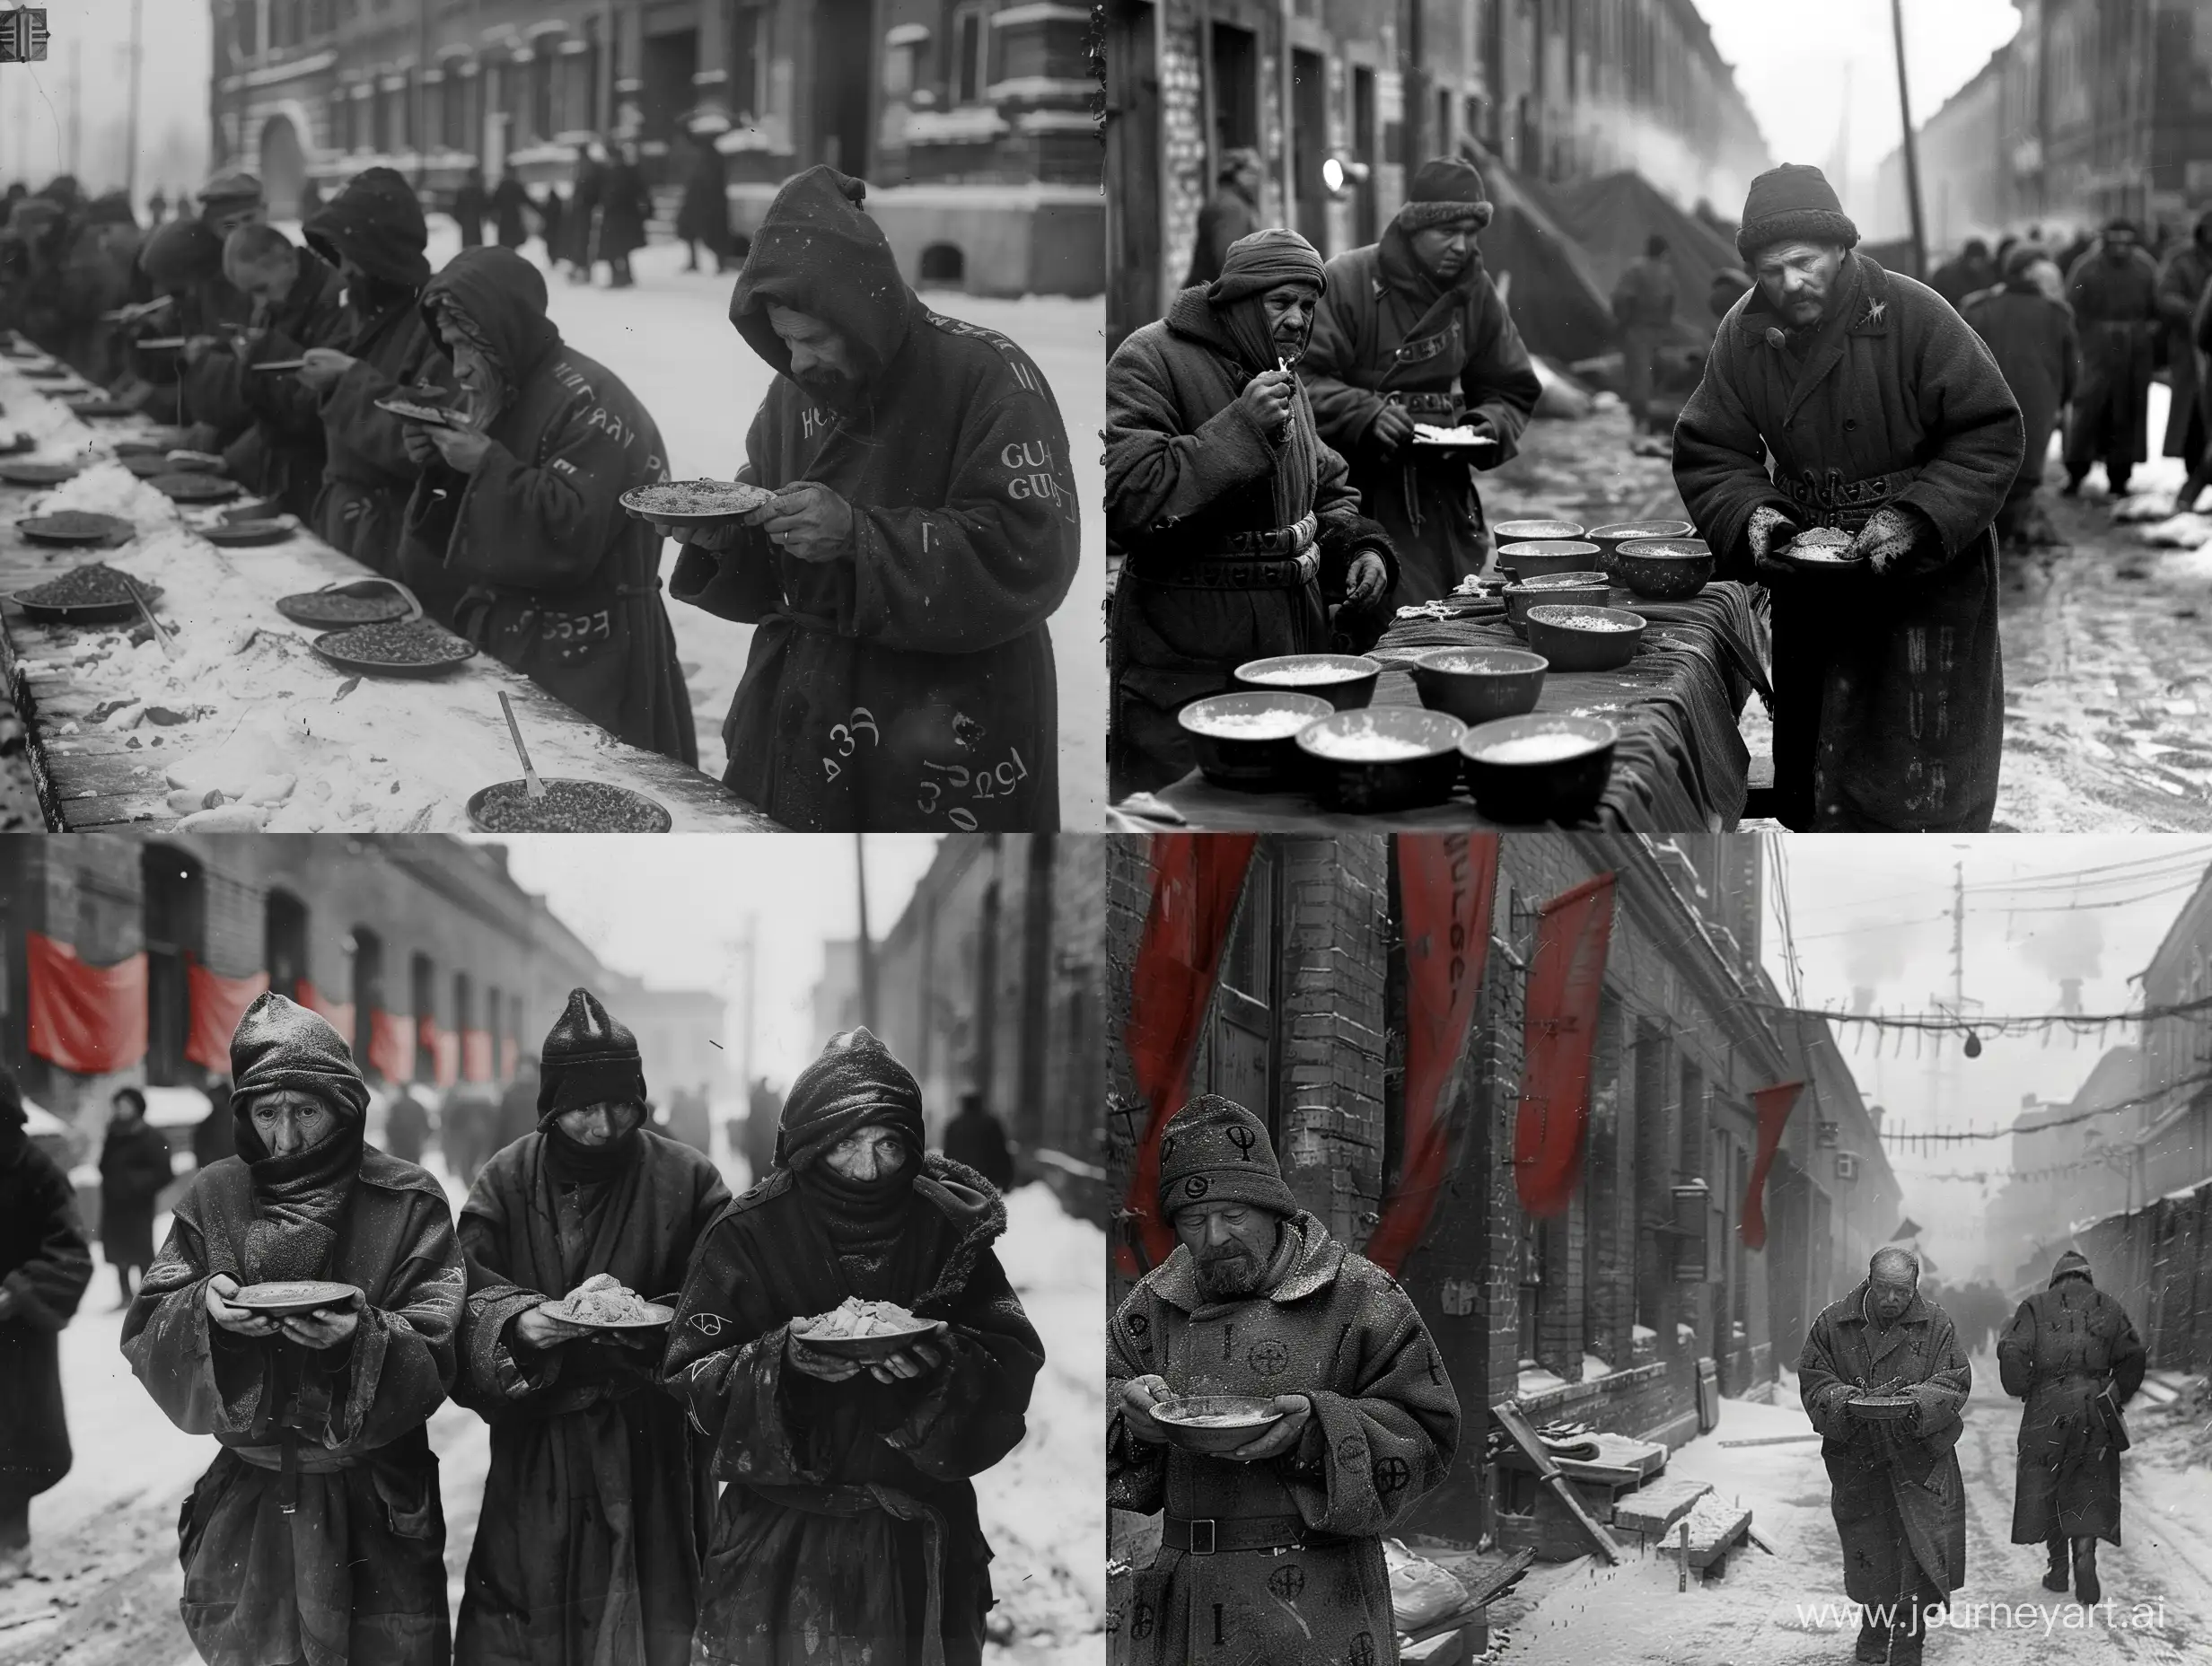 Советские заключённые ГУЛАГа едят паёк и носят заклеймённые робы
На улице холодная краснознамённая весна, действие происходит в СССР 1930-ых, черно-белое фото